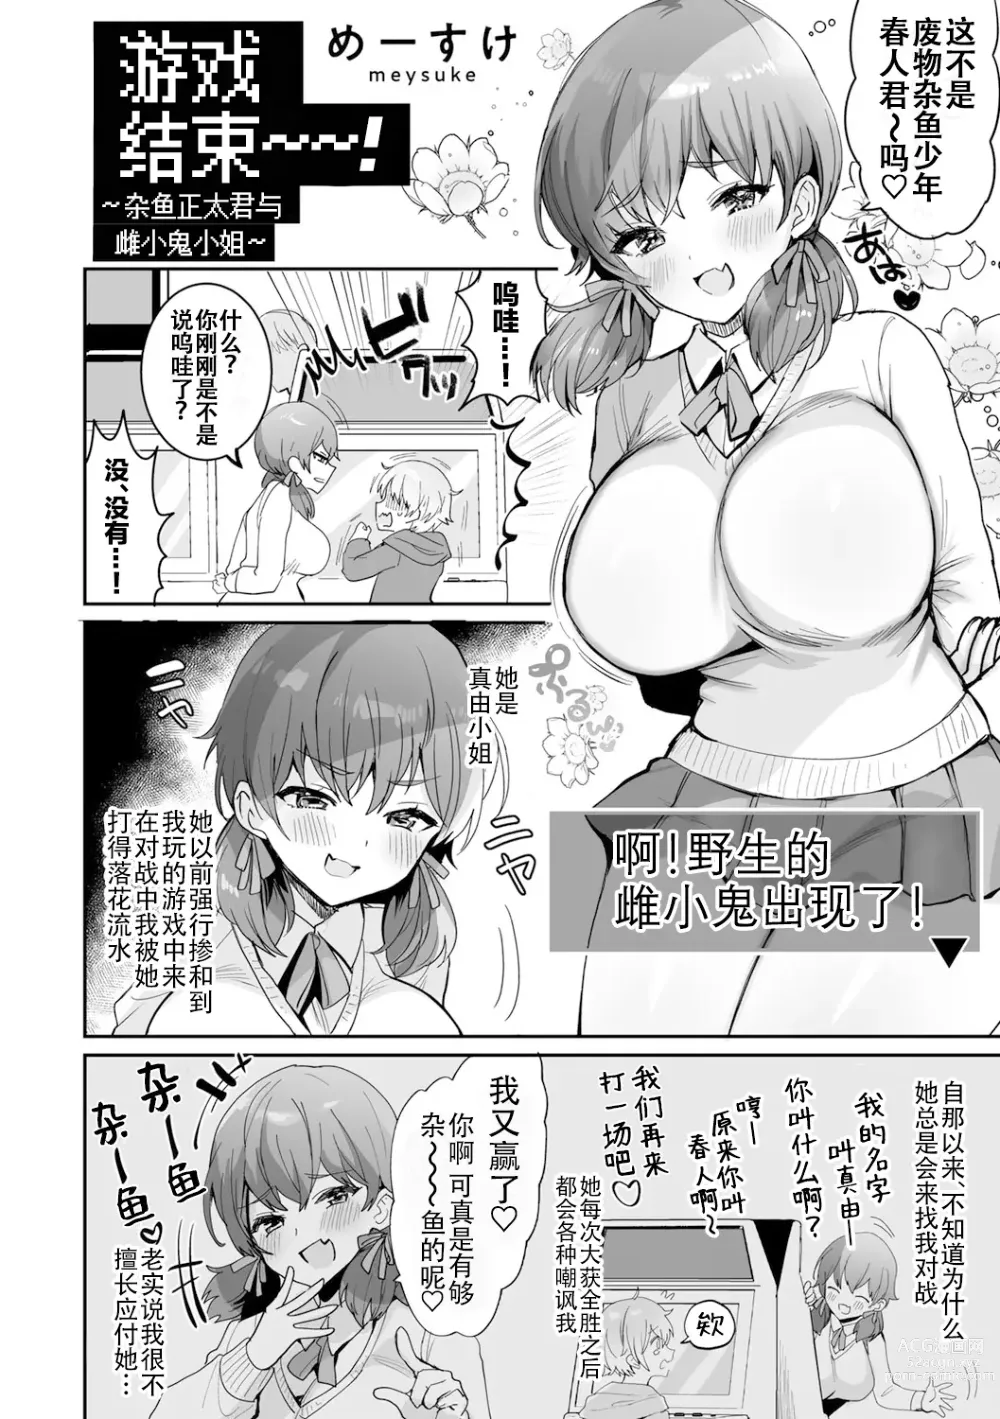 Page 2 of manga 游戏结束！~杂鱼正太君与雌小鬼小姐~